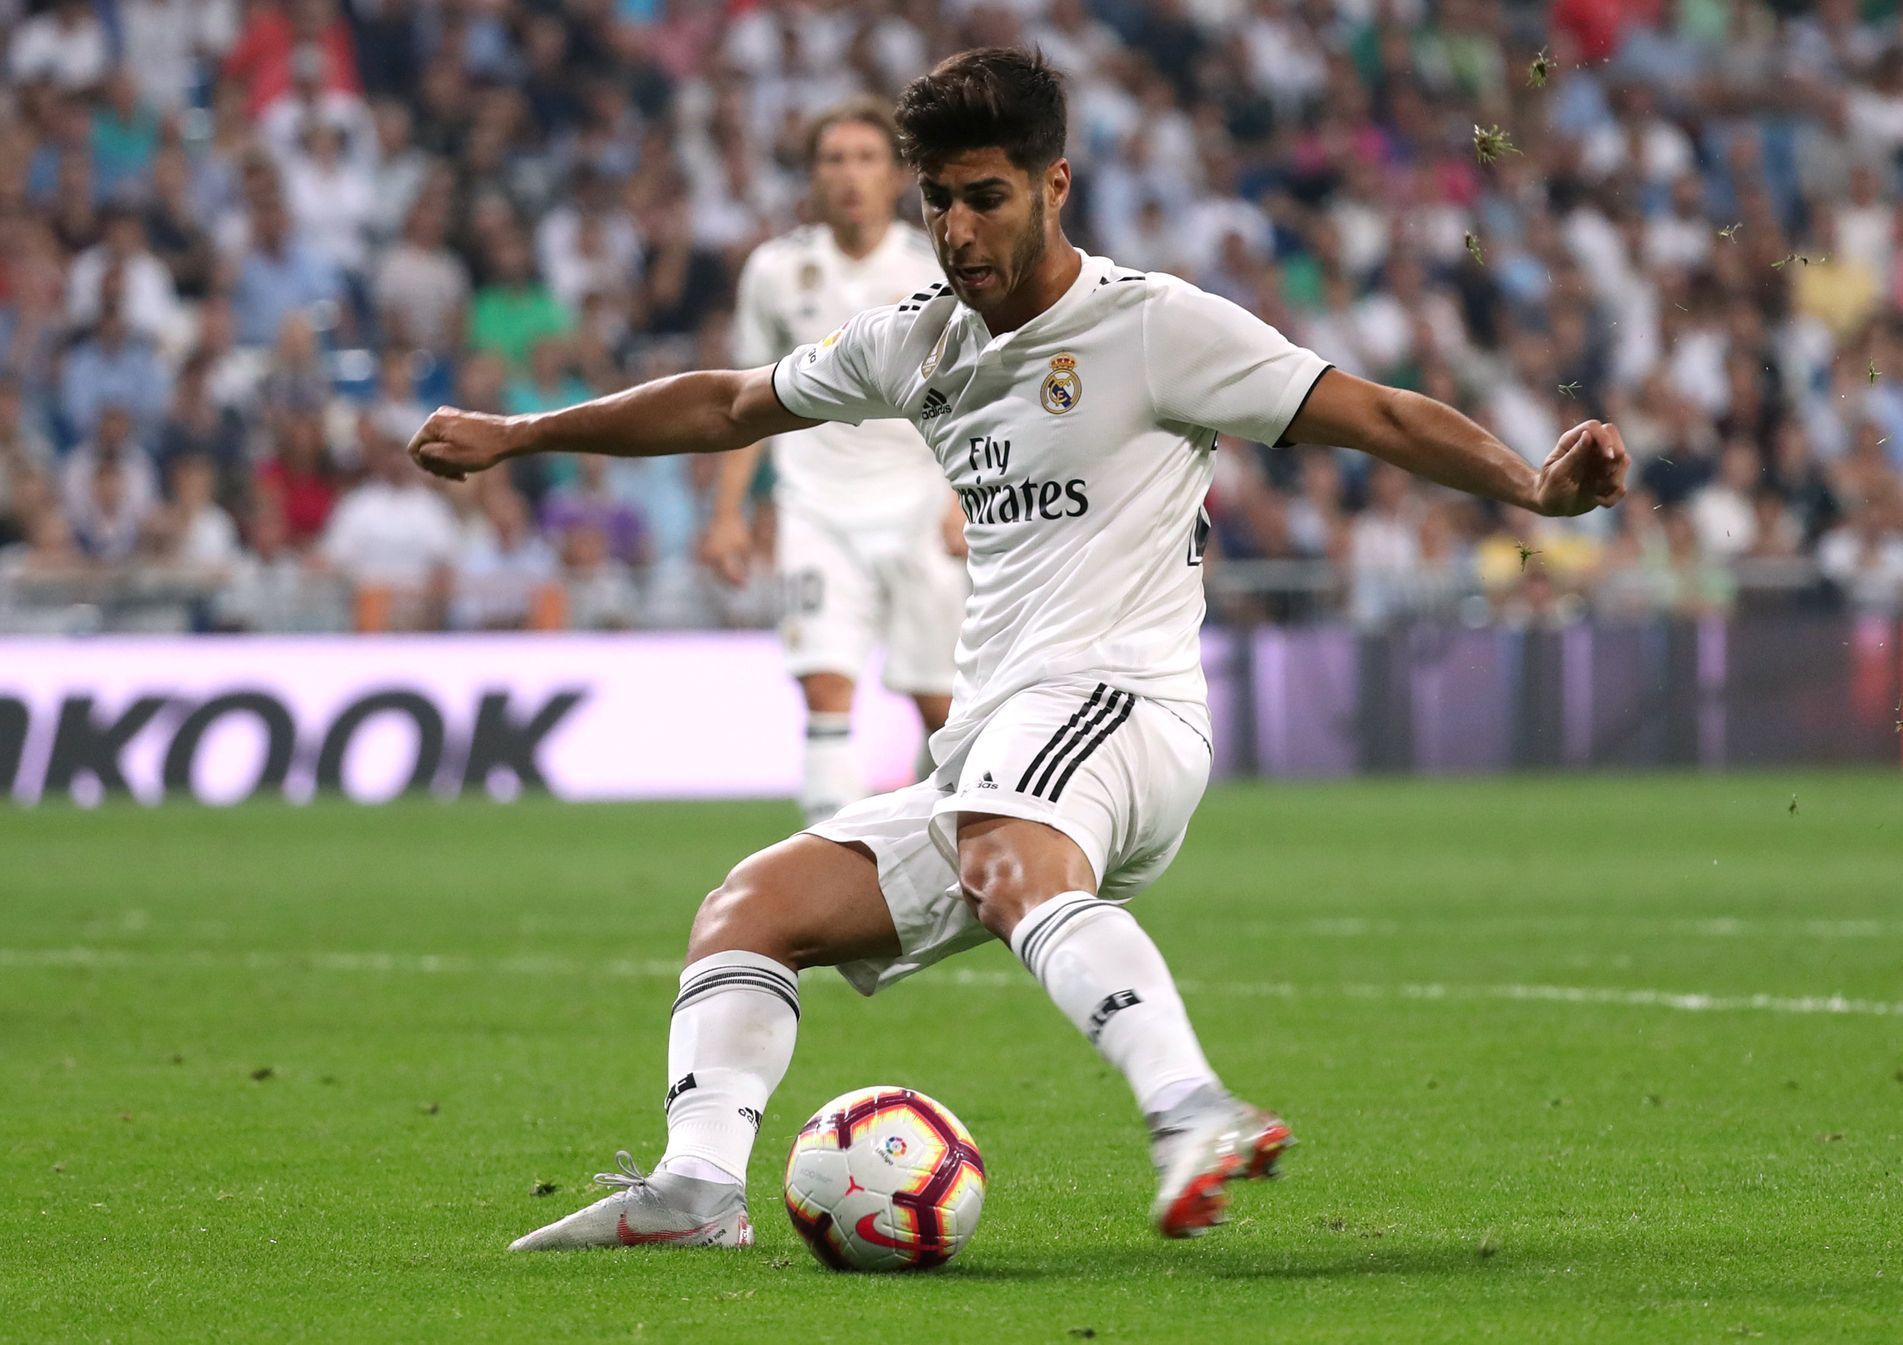 fotbal, španělská liga 2018/2019, Real Madrid - Espaňol, Marco Asensio střílí gól